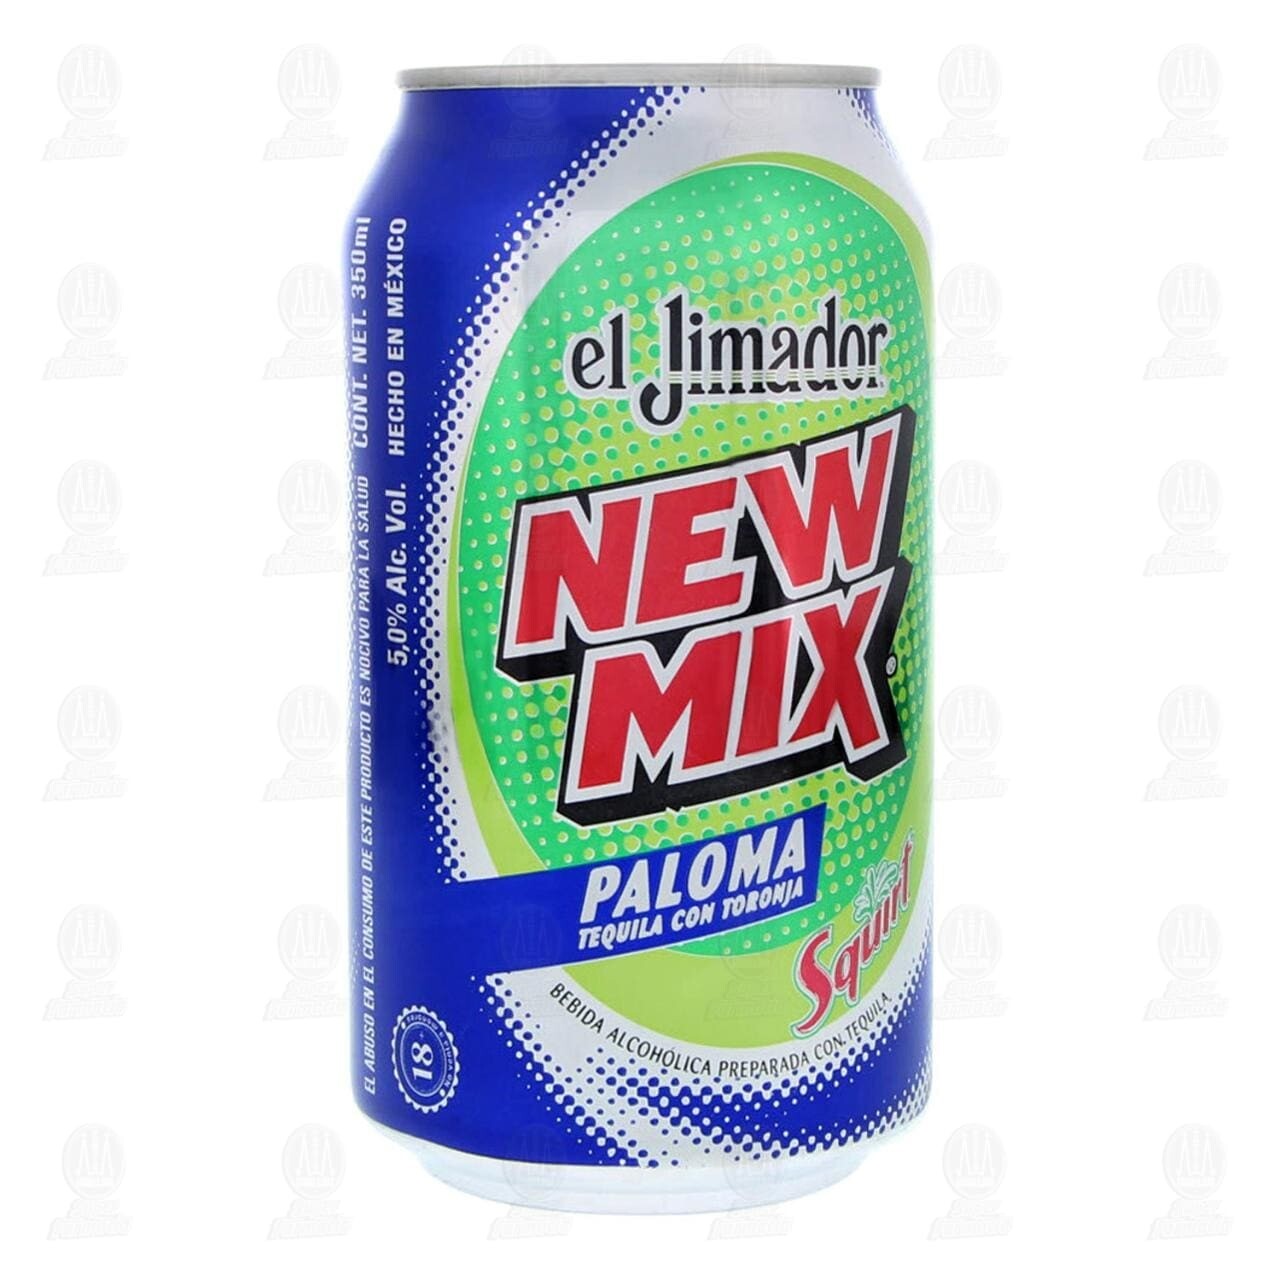 Jimador New Mix 6pk Houston Liquor Store Houston Liquor Store